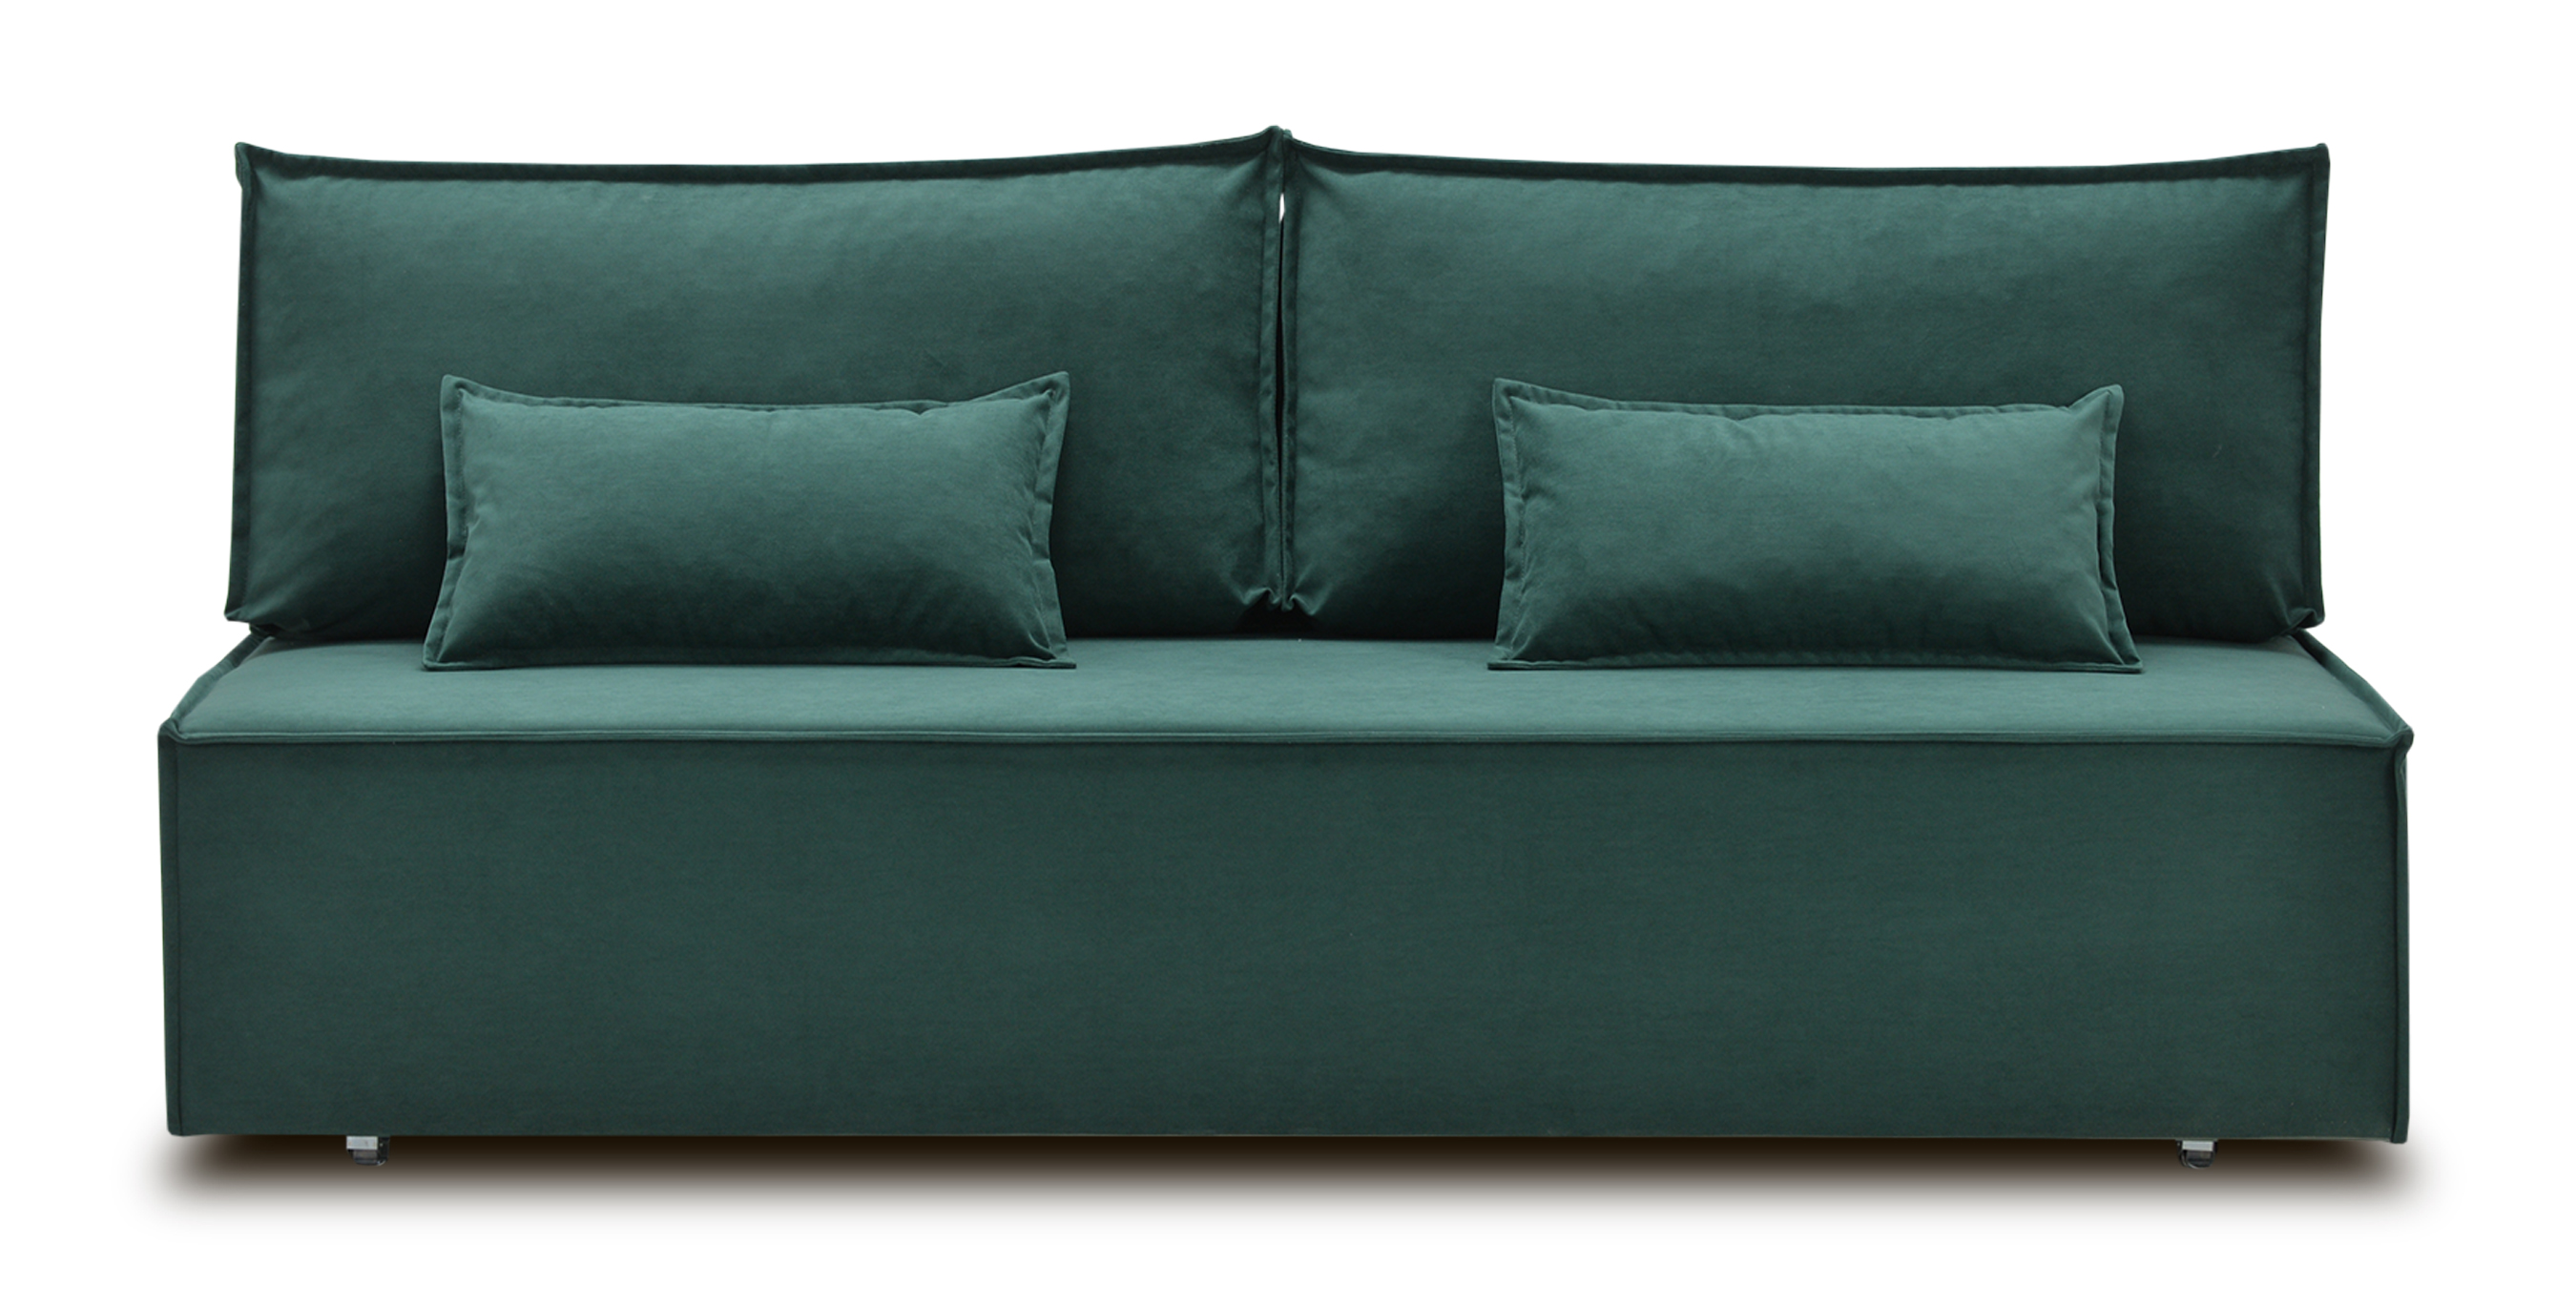 Диван-кровать «Фабио II» без подлокотников Ultra forest рогожка зеленый купить от 38500 руб. в интернет-магазине Фабрики PUSHE в Оренбурге